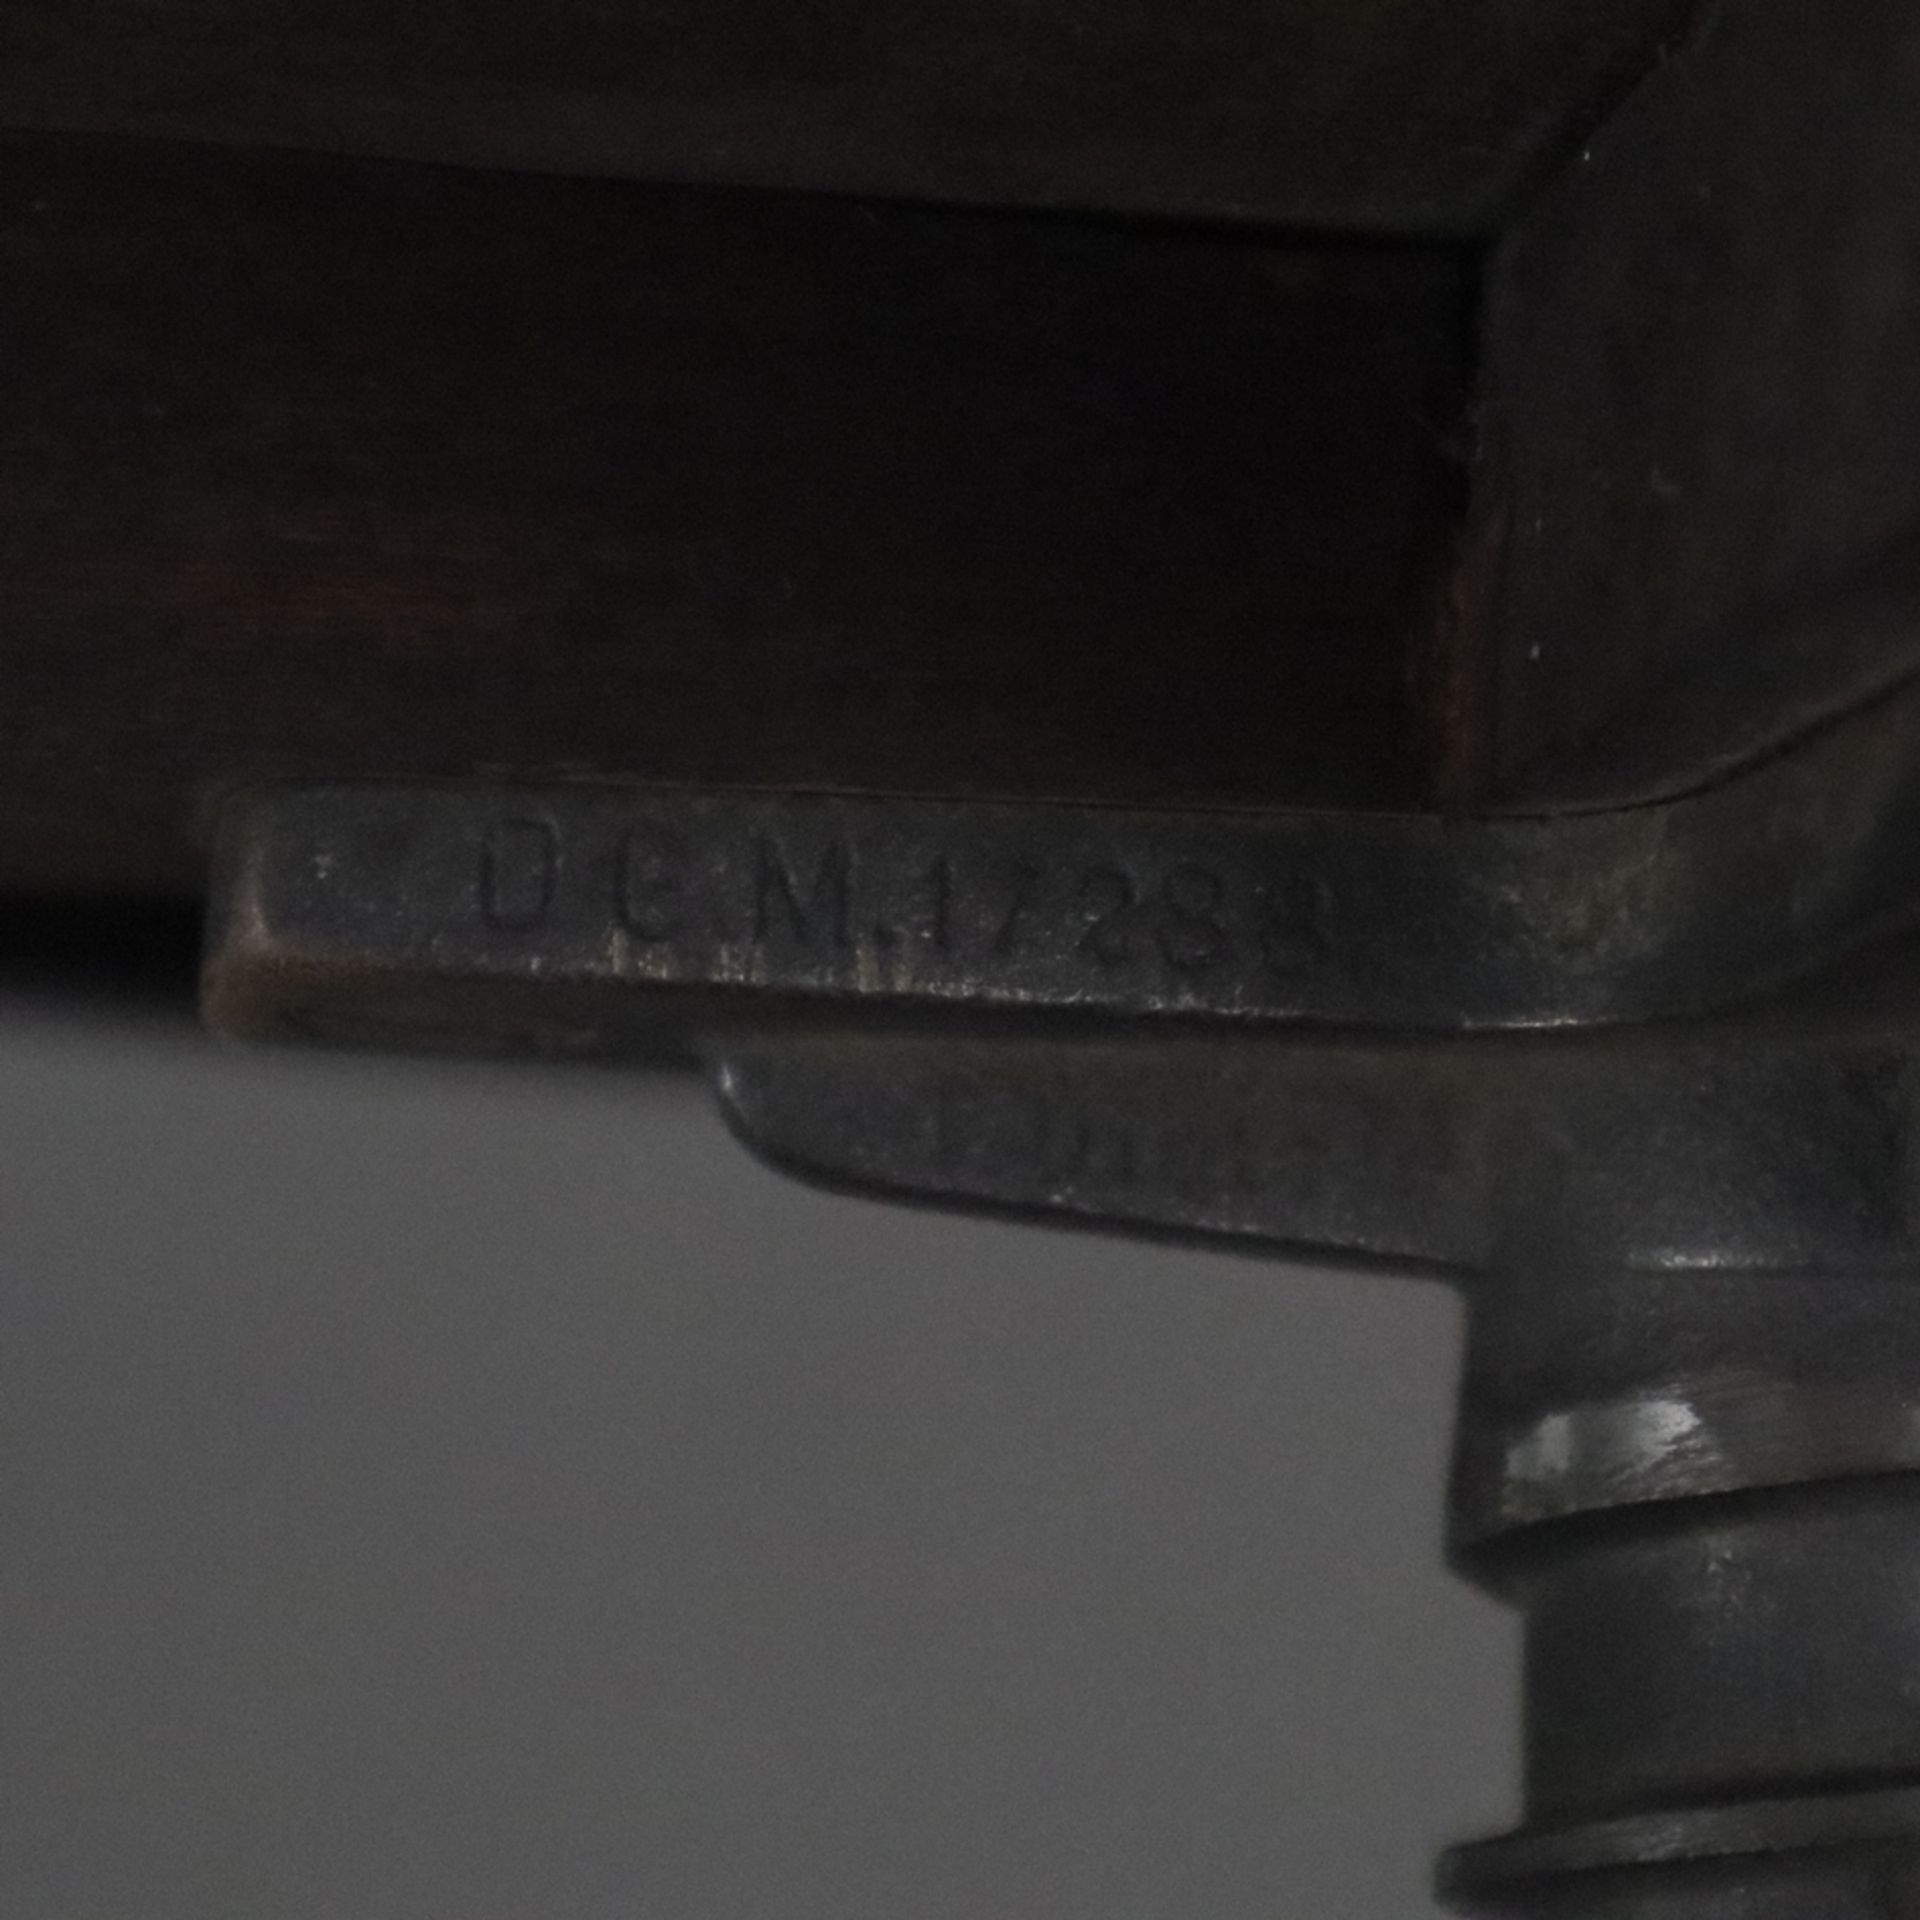 Louis Philippe-Klavierhocker - 19. Jh., Baluster-Dreibeingestell aus Holz, schwarz gefasst, höhenve - Bild 8 aus 12